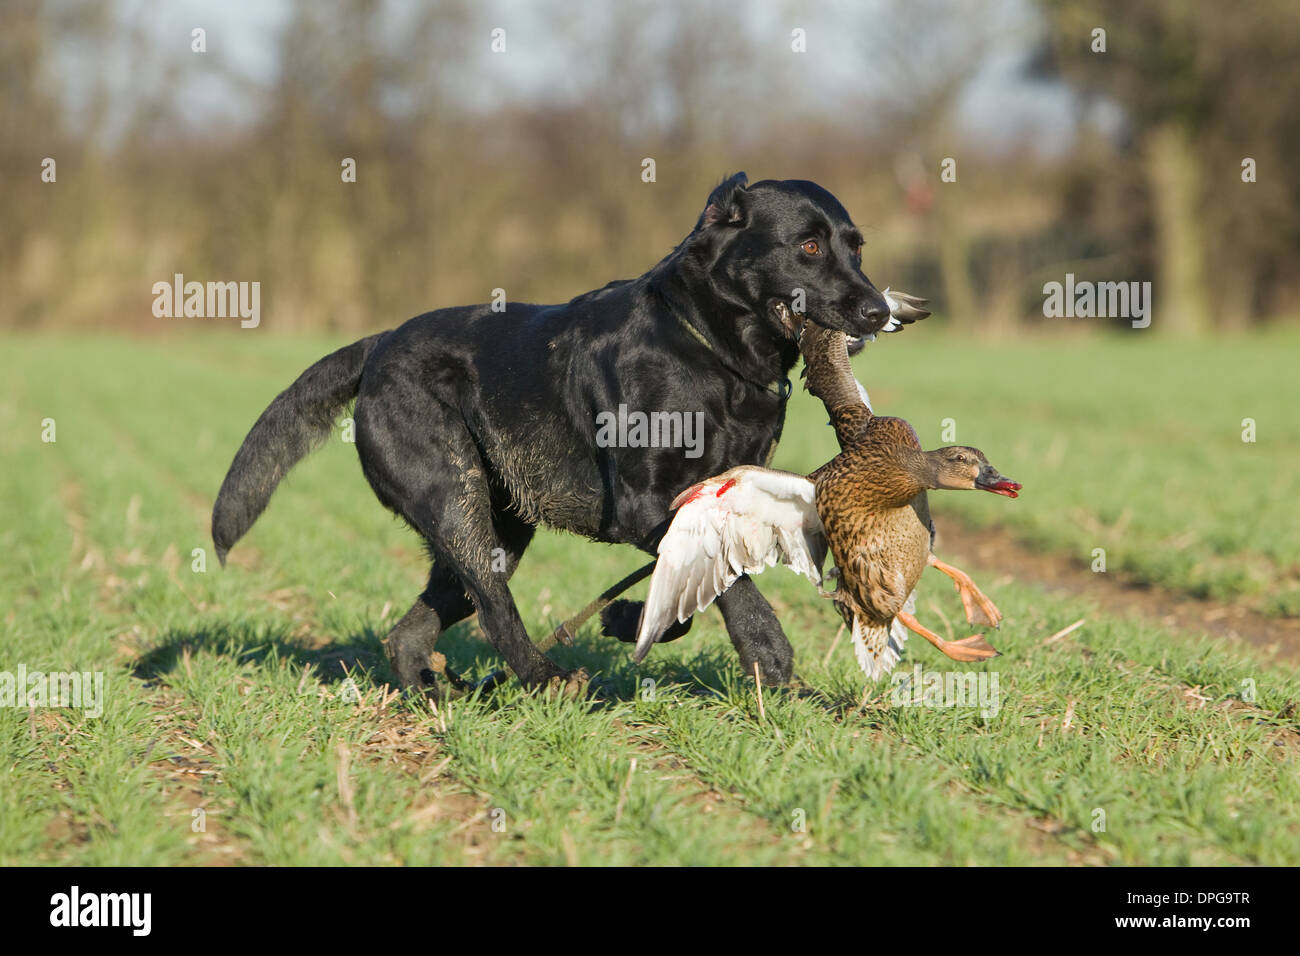 A Black Labrador Retriever retrieving a duck on a shoot in England Stock Photo